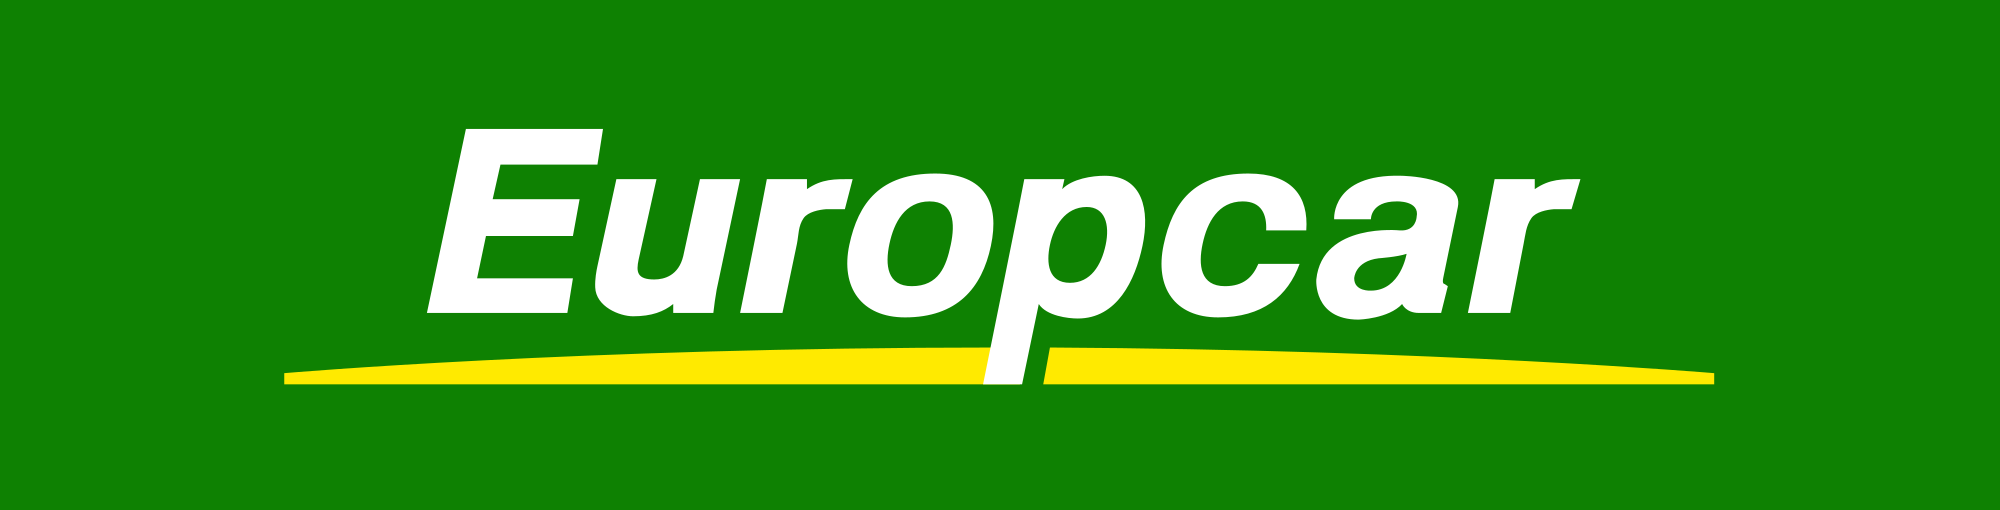 Europcar logo.svg